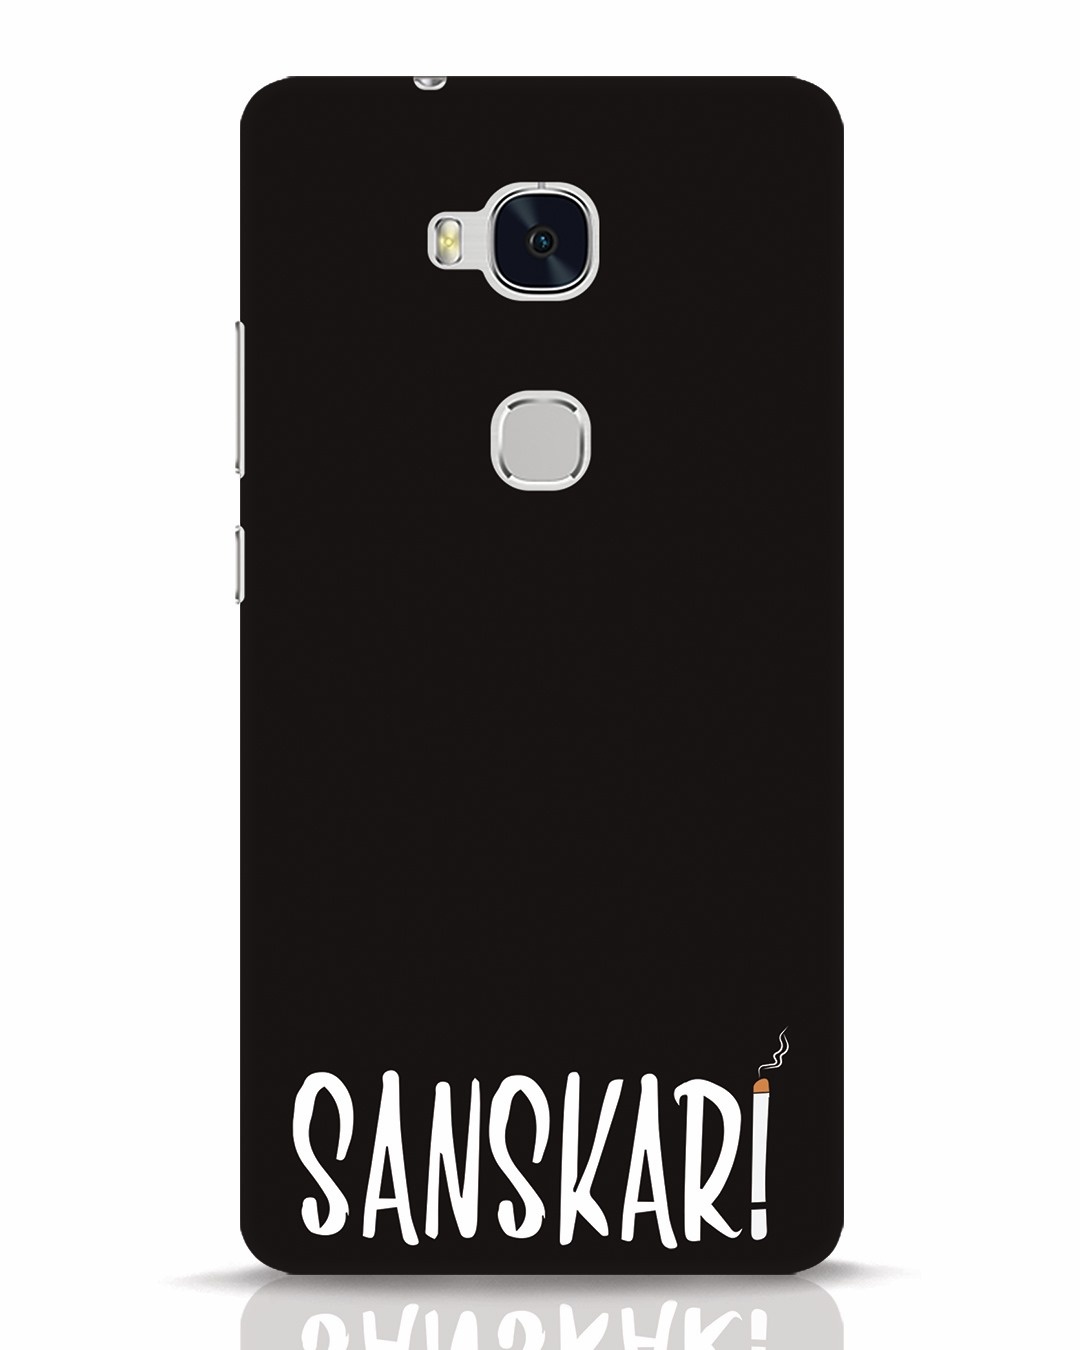 Sanskari Huawei Honor 5x Mobile Cover Honor 5x Mobile Covers Bewakoof.com